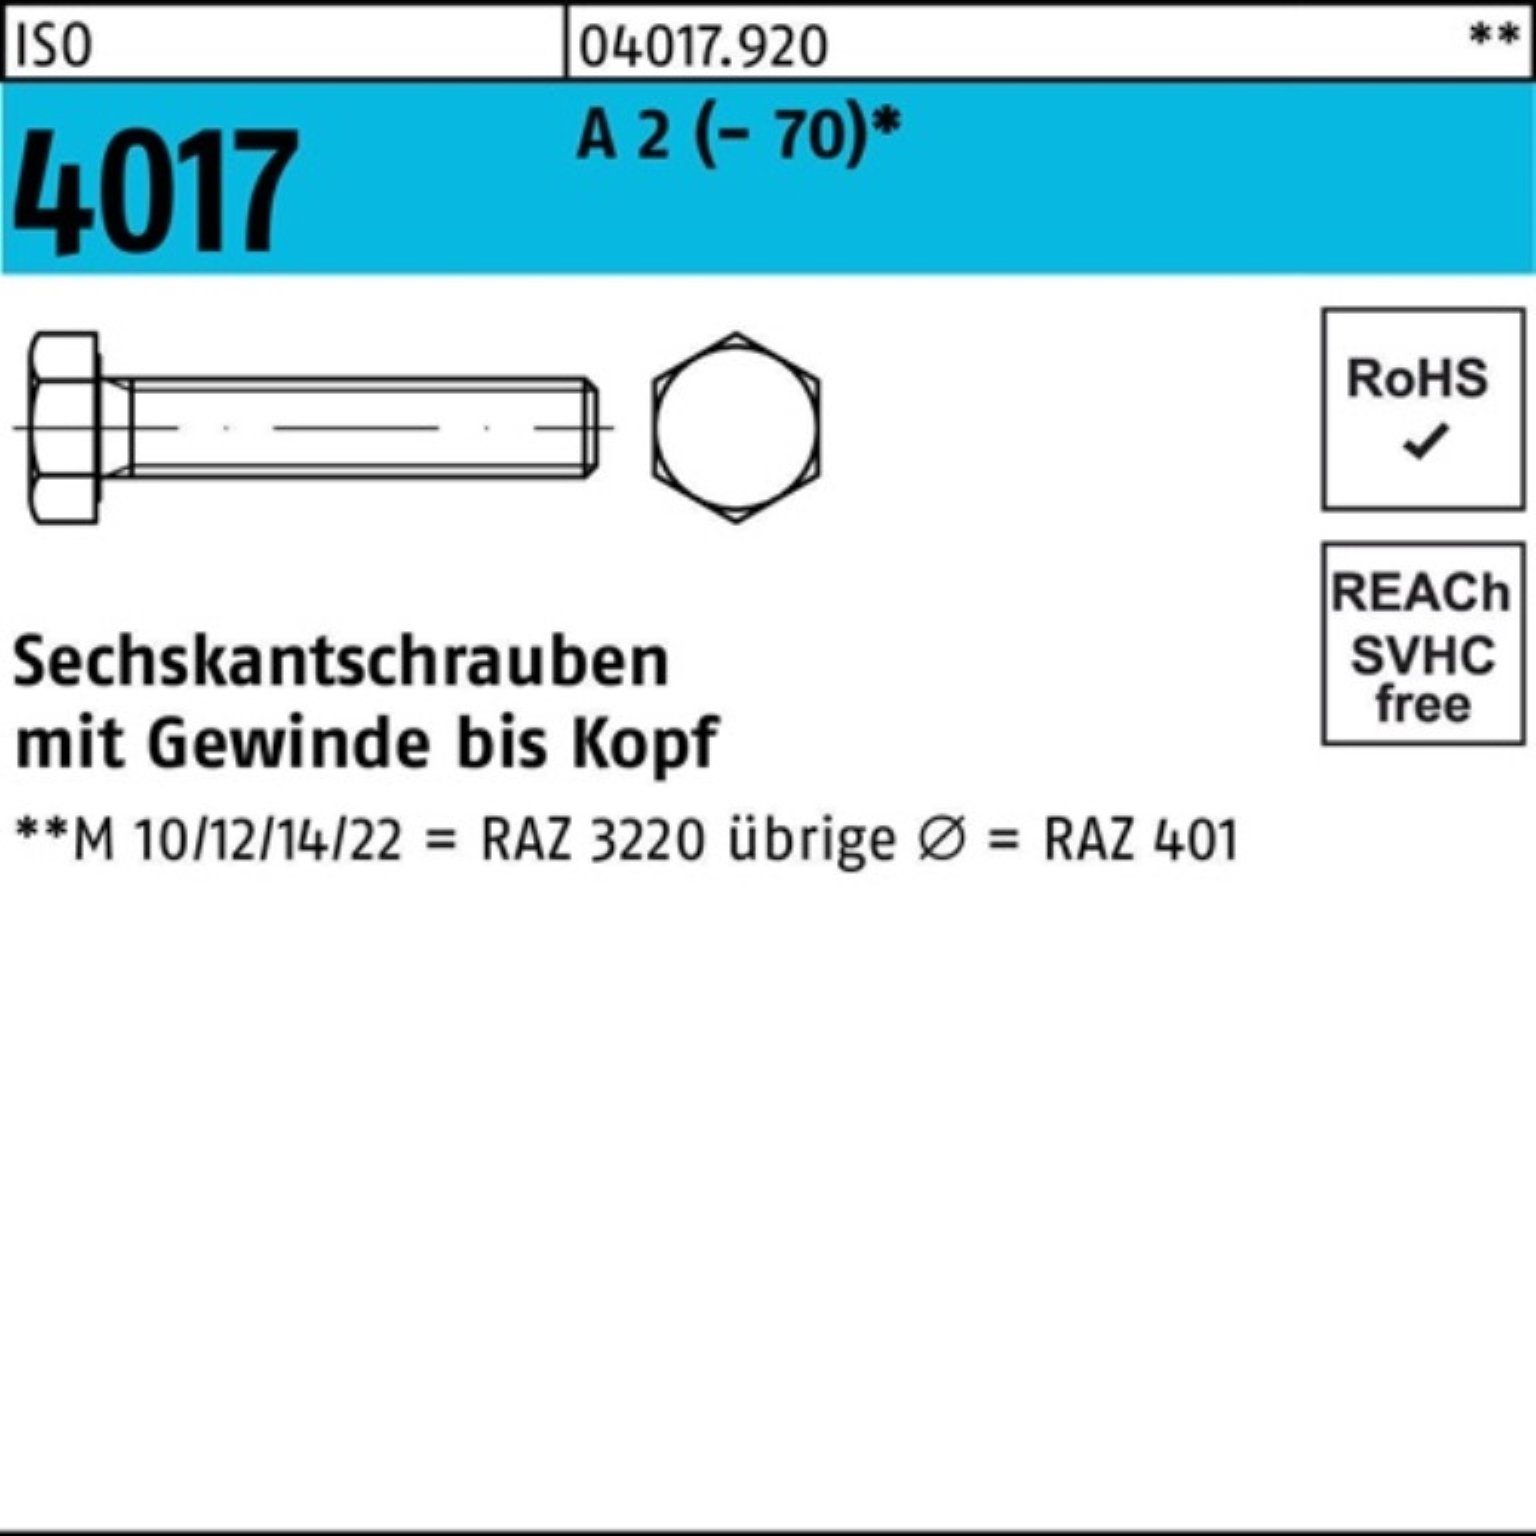 Bufab Sechskantschraube 100er Pack (70) A 4017 Sechskantschraube ISO Stück M8x 170 VG 2 50